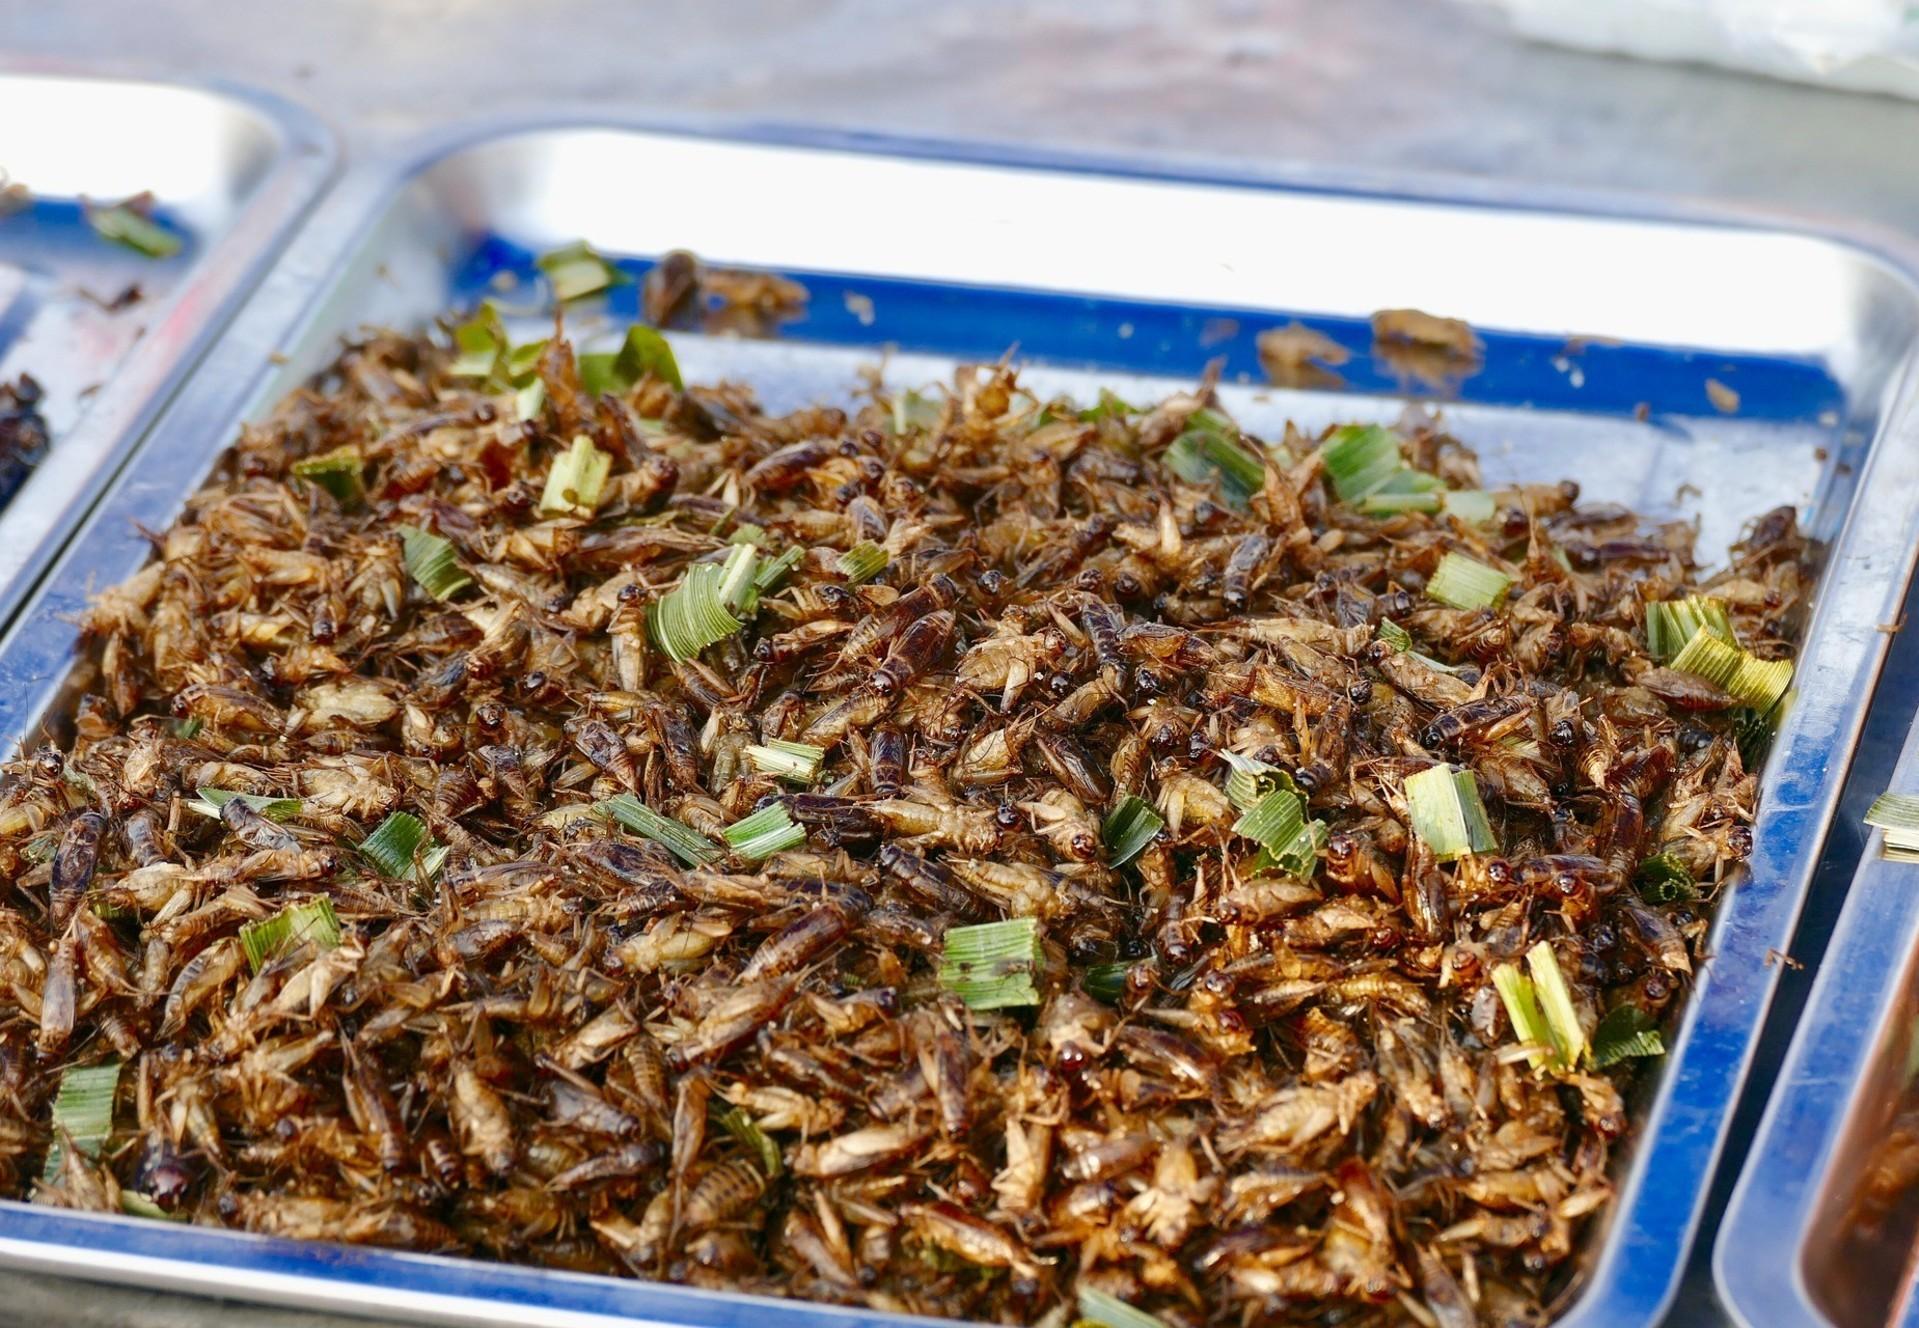 Les insectes comestibles - QUATRE PATTES en Suisse - organisation